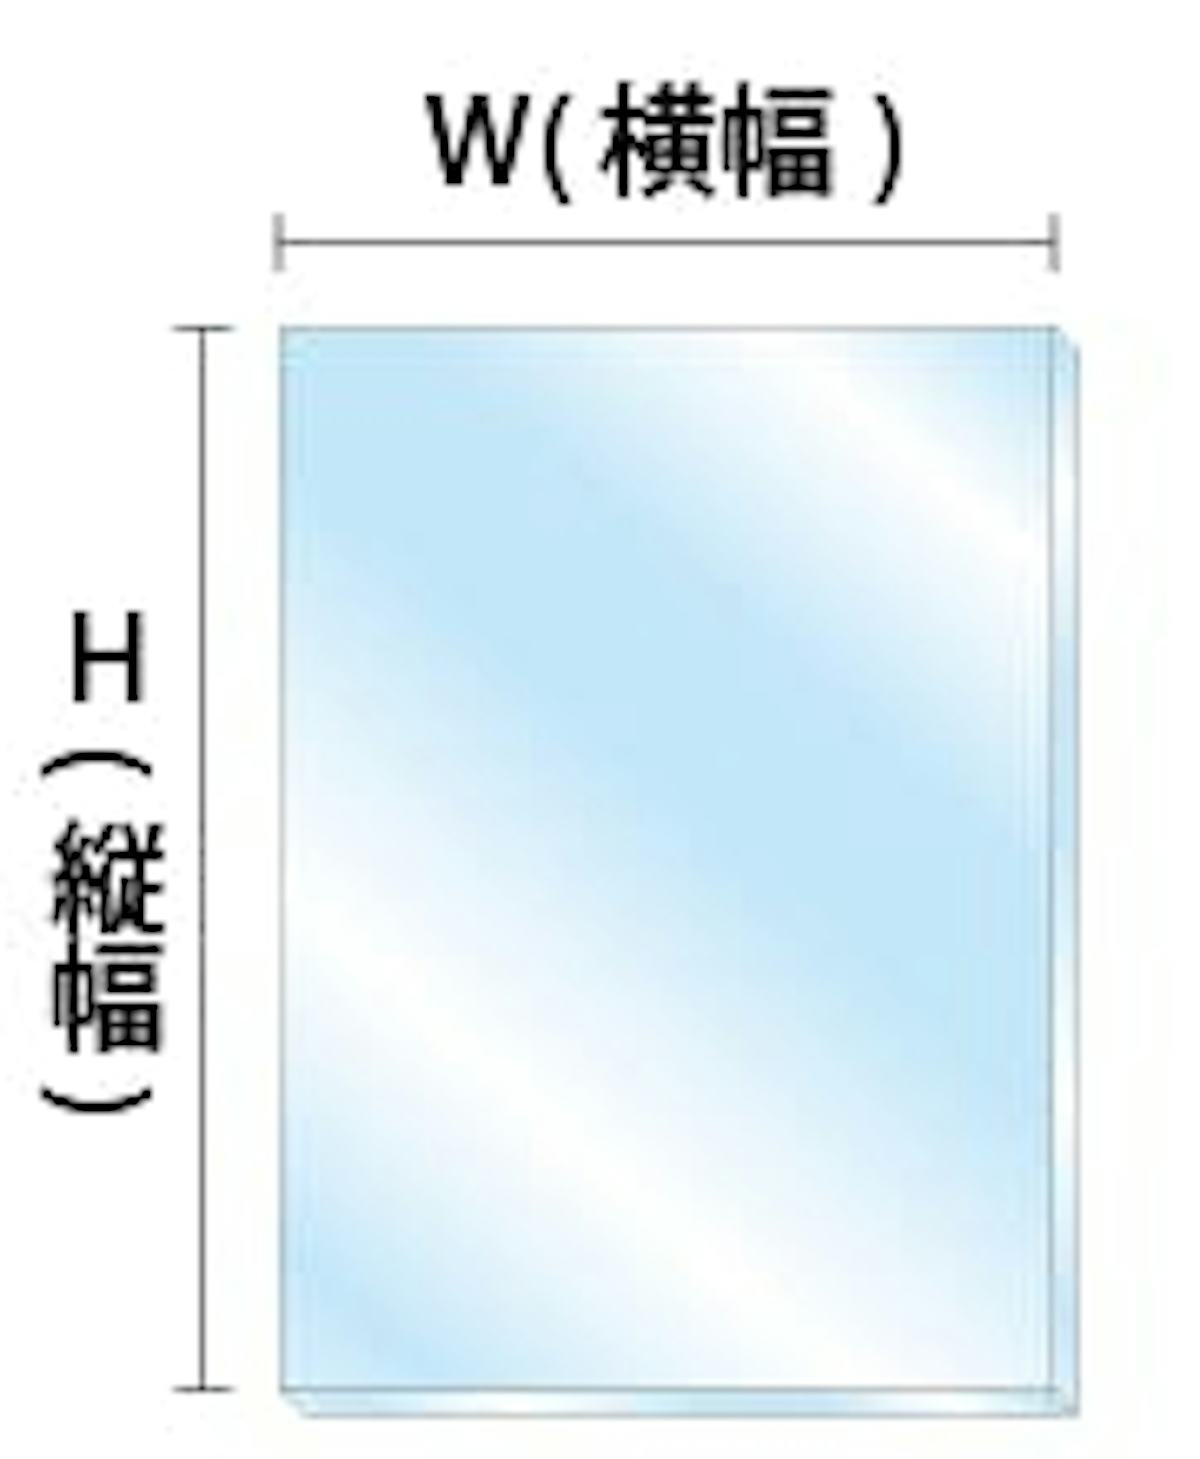 ガラス寸法を表す「W」「H」の箇所